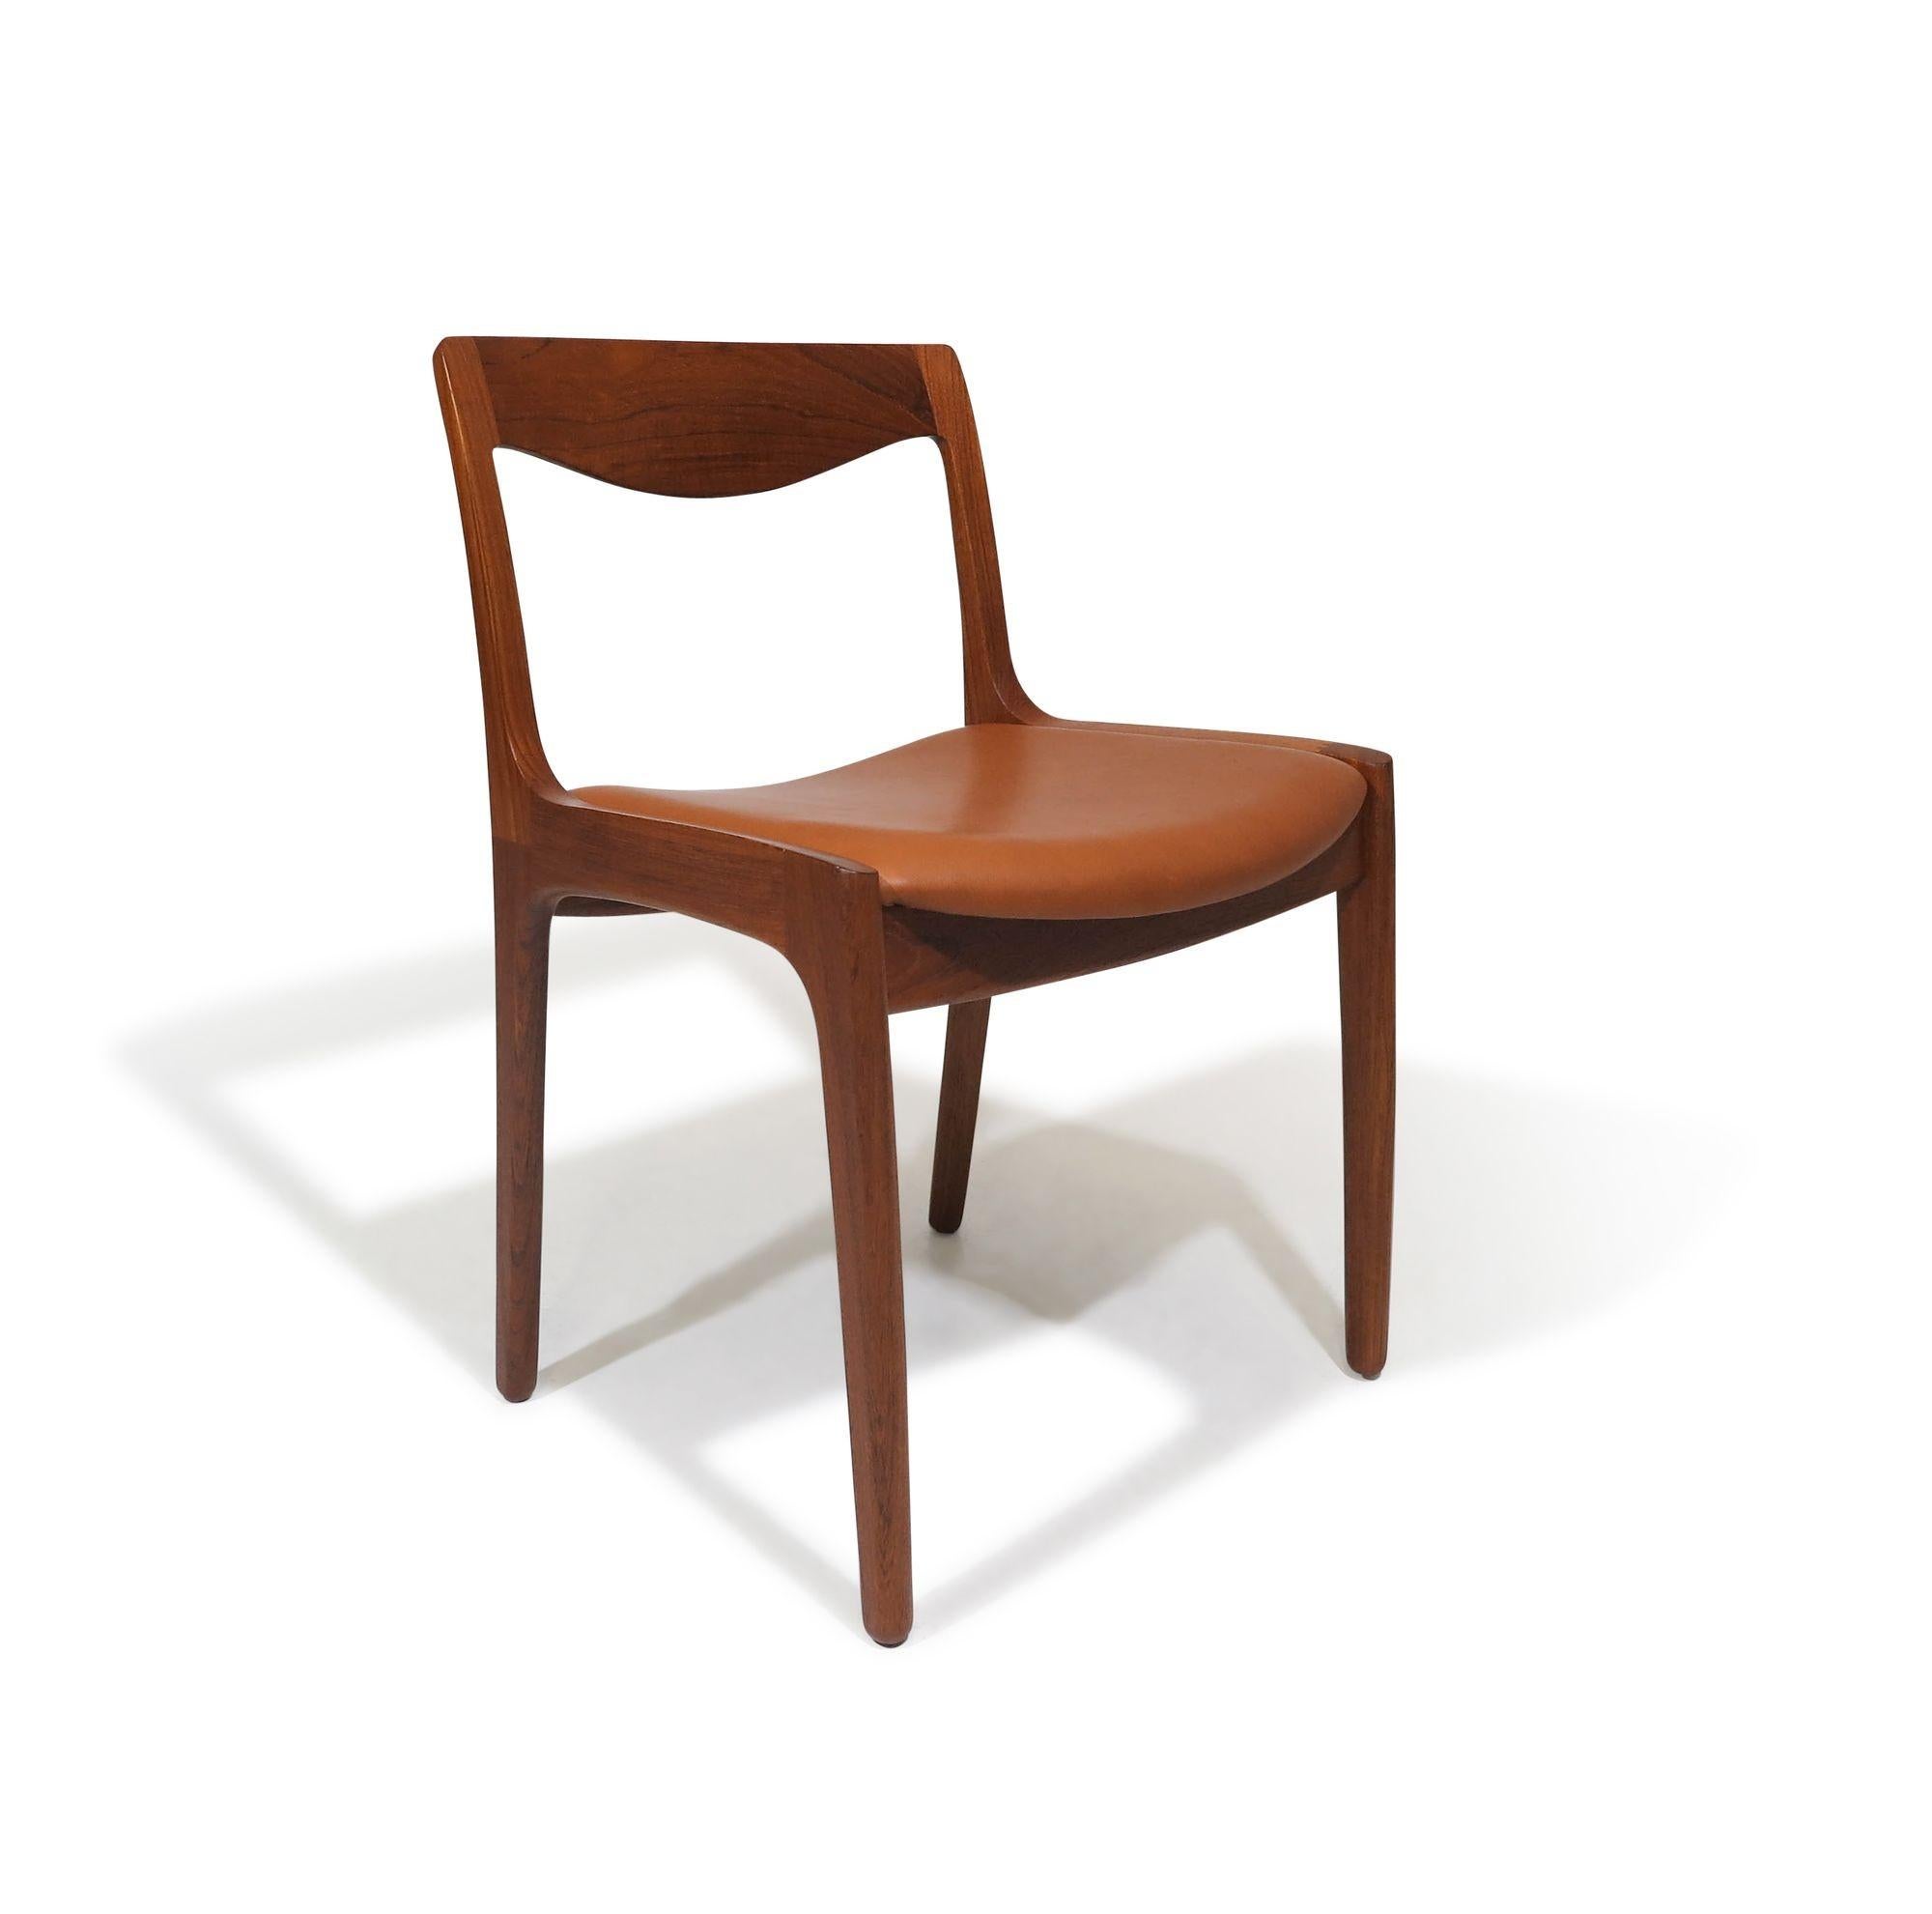 Oiled Vilhelm Wohlert for Poul Jeppesen's Teak Dining Chairs For Sale